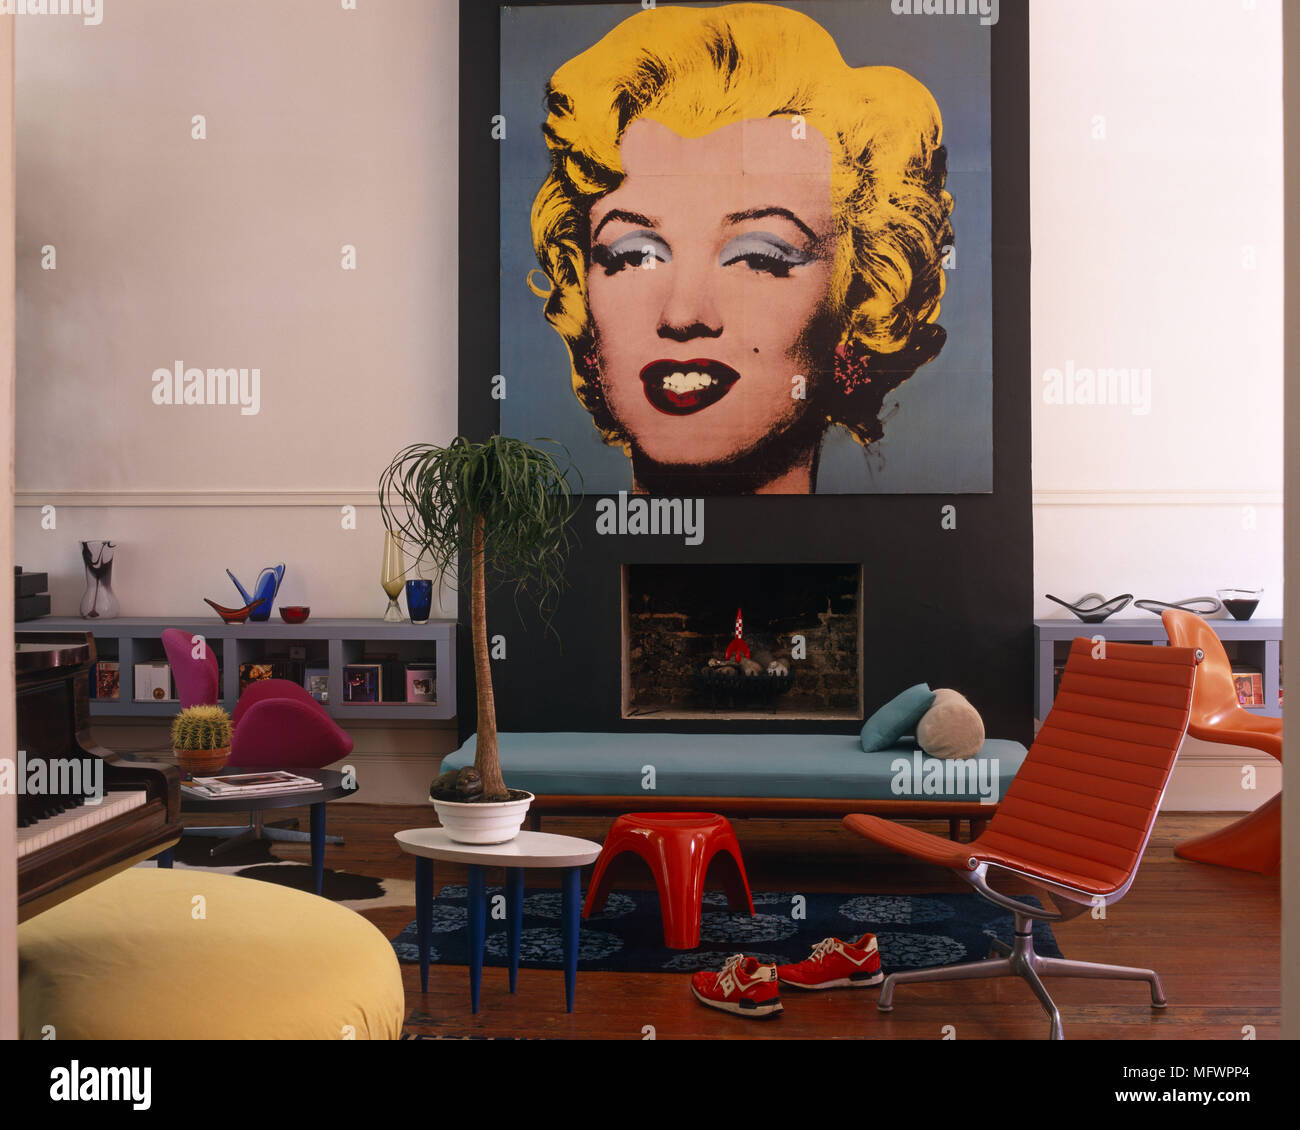 Wohnzimmer mit Andy Warhol Siebdruck Marilyn Monroe über dem Kamin Stockfoto